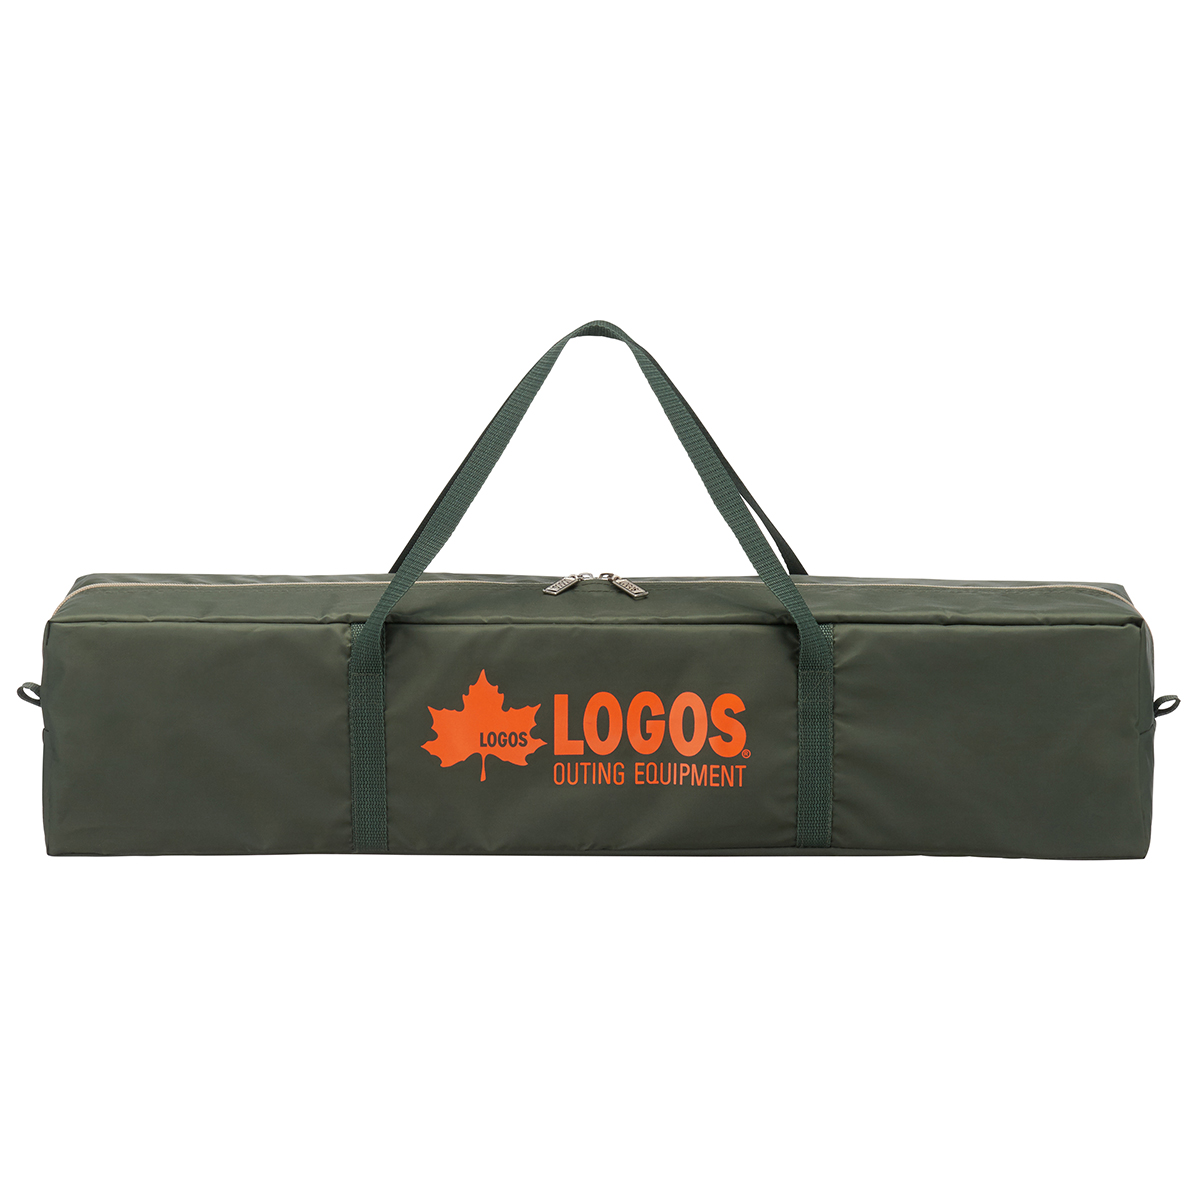 ロゴス(LOGOS) neos ミニバンリビング カーキャンプ用では購入させていただきます